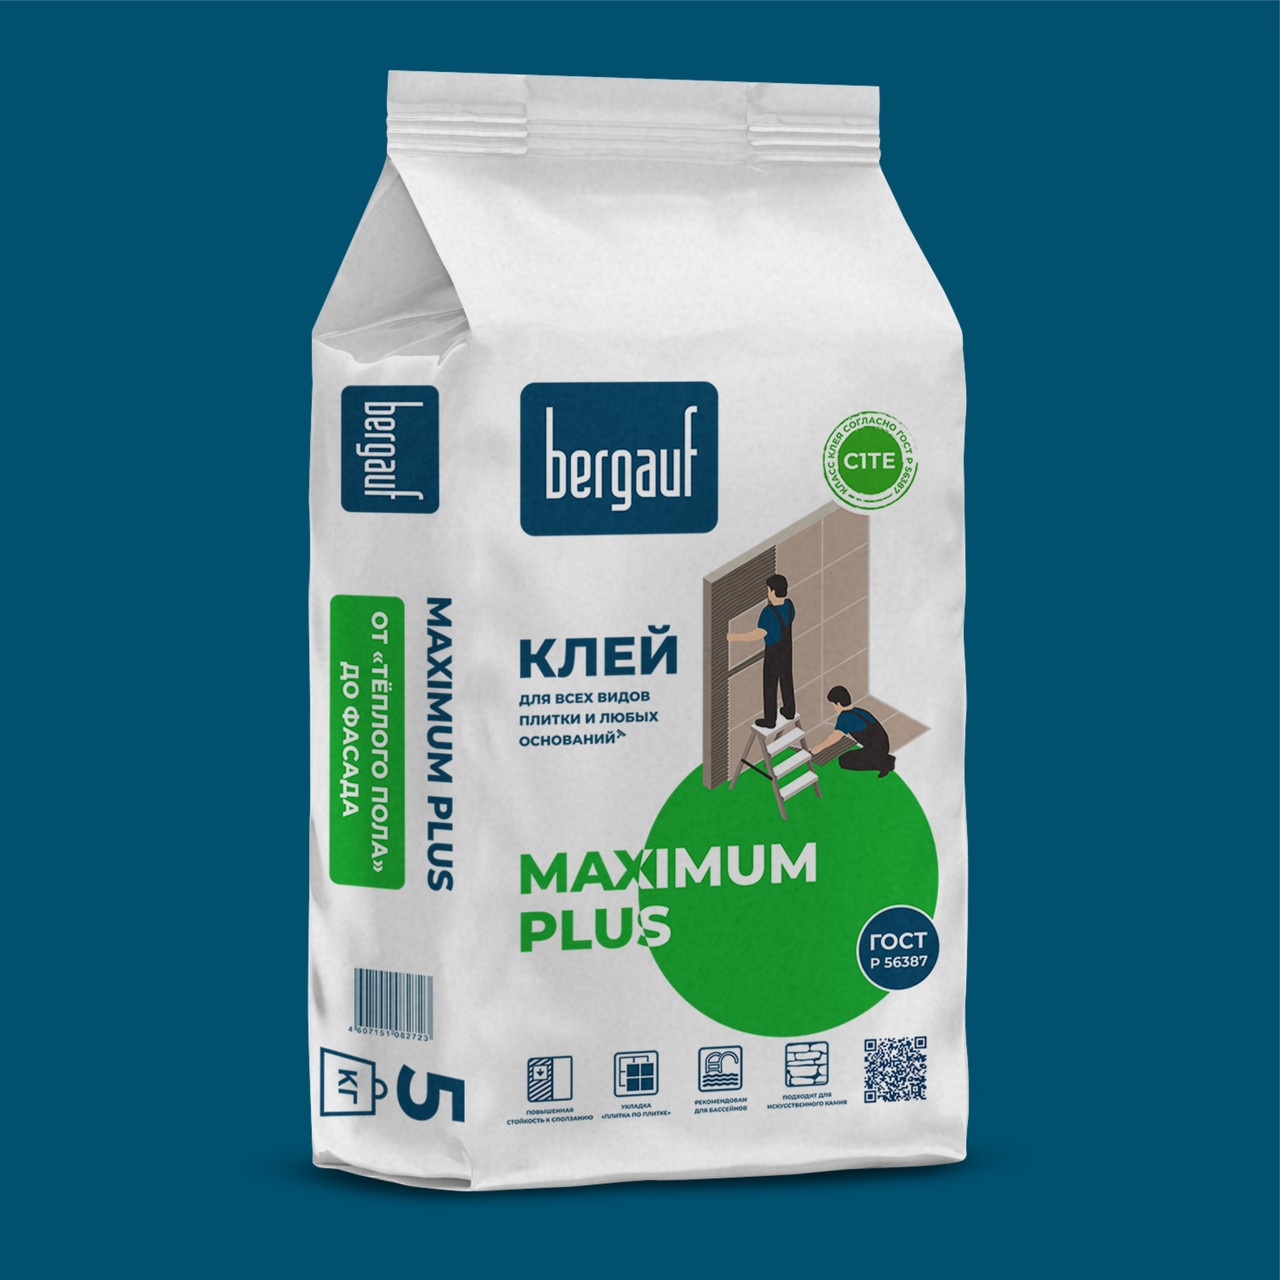 Клей для плитки MAXIMUM PLUS  5 кг  Bergauf